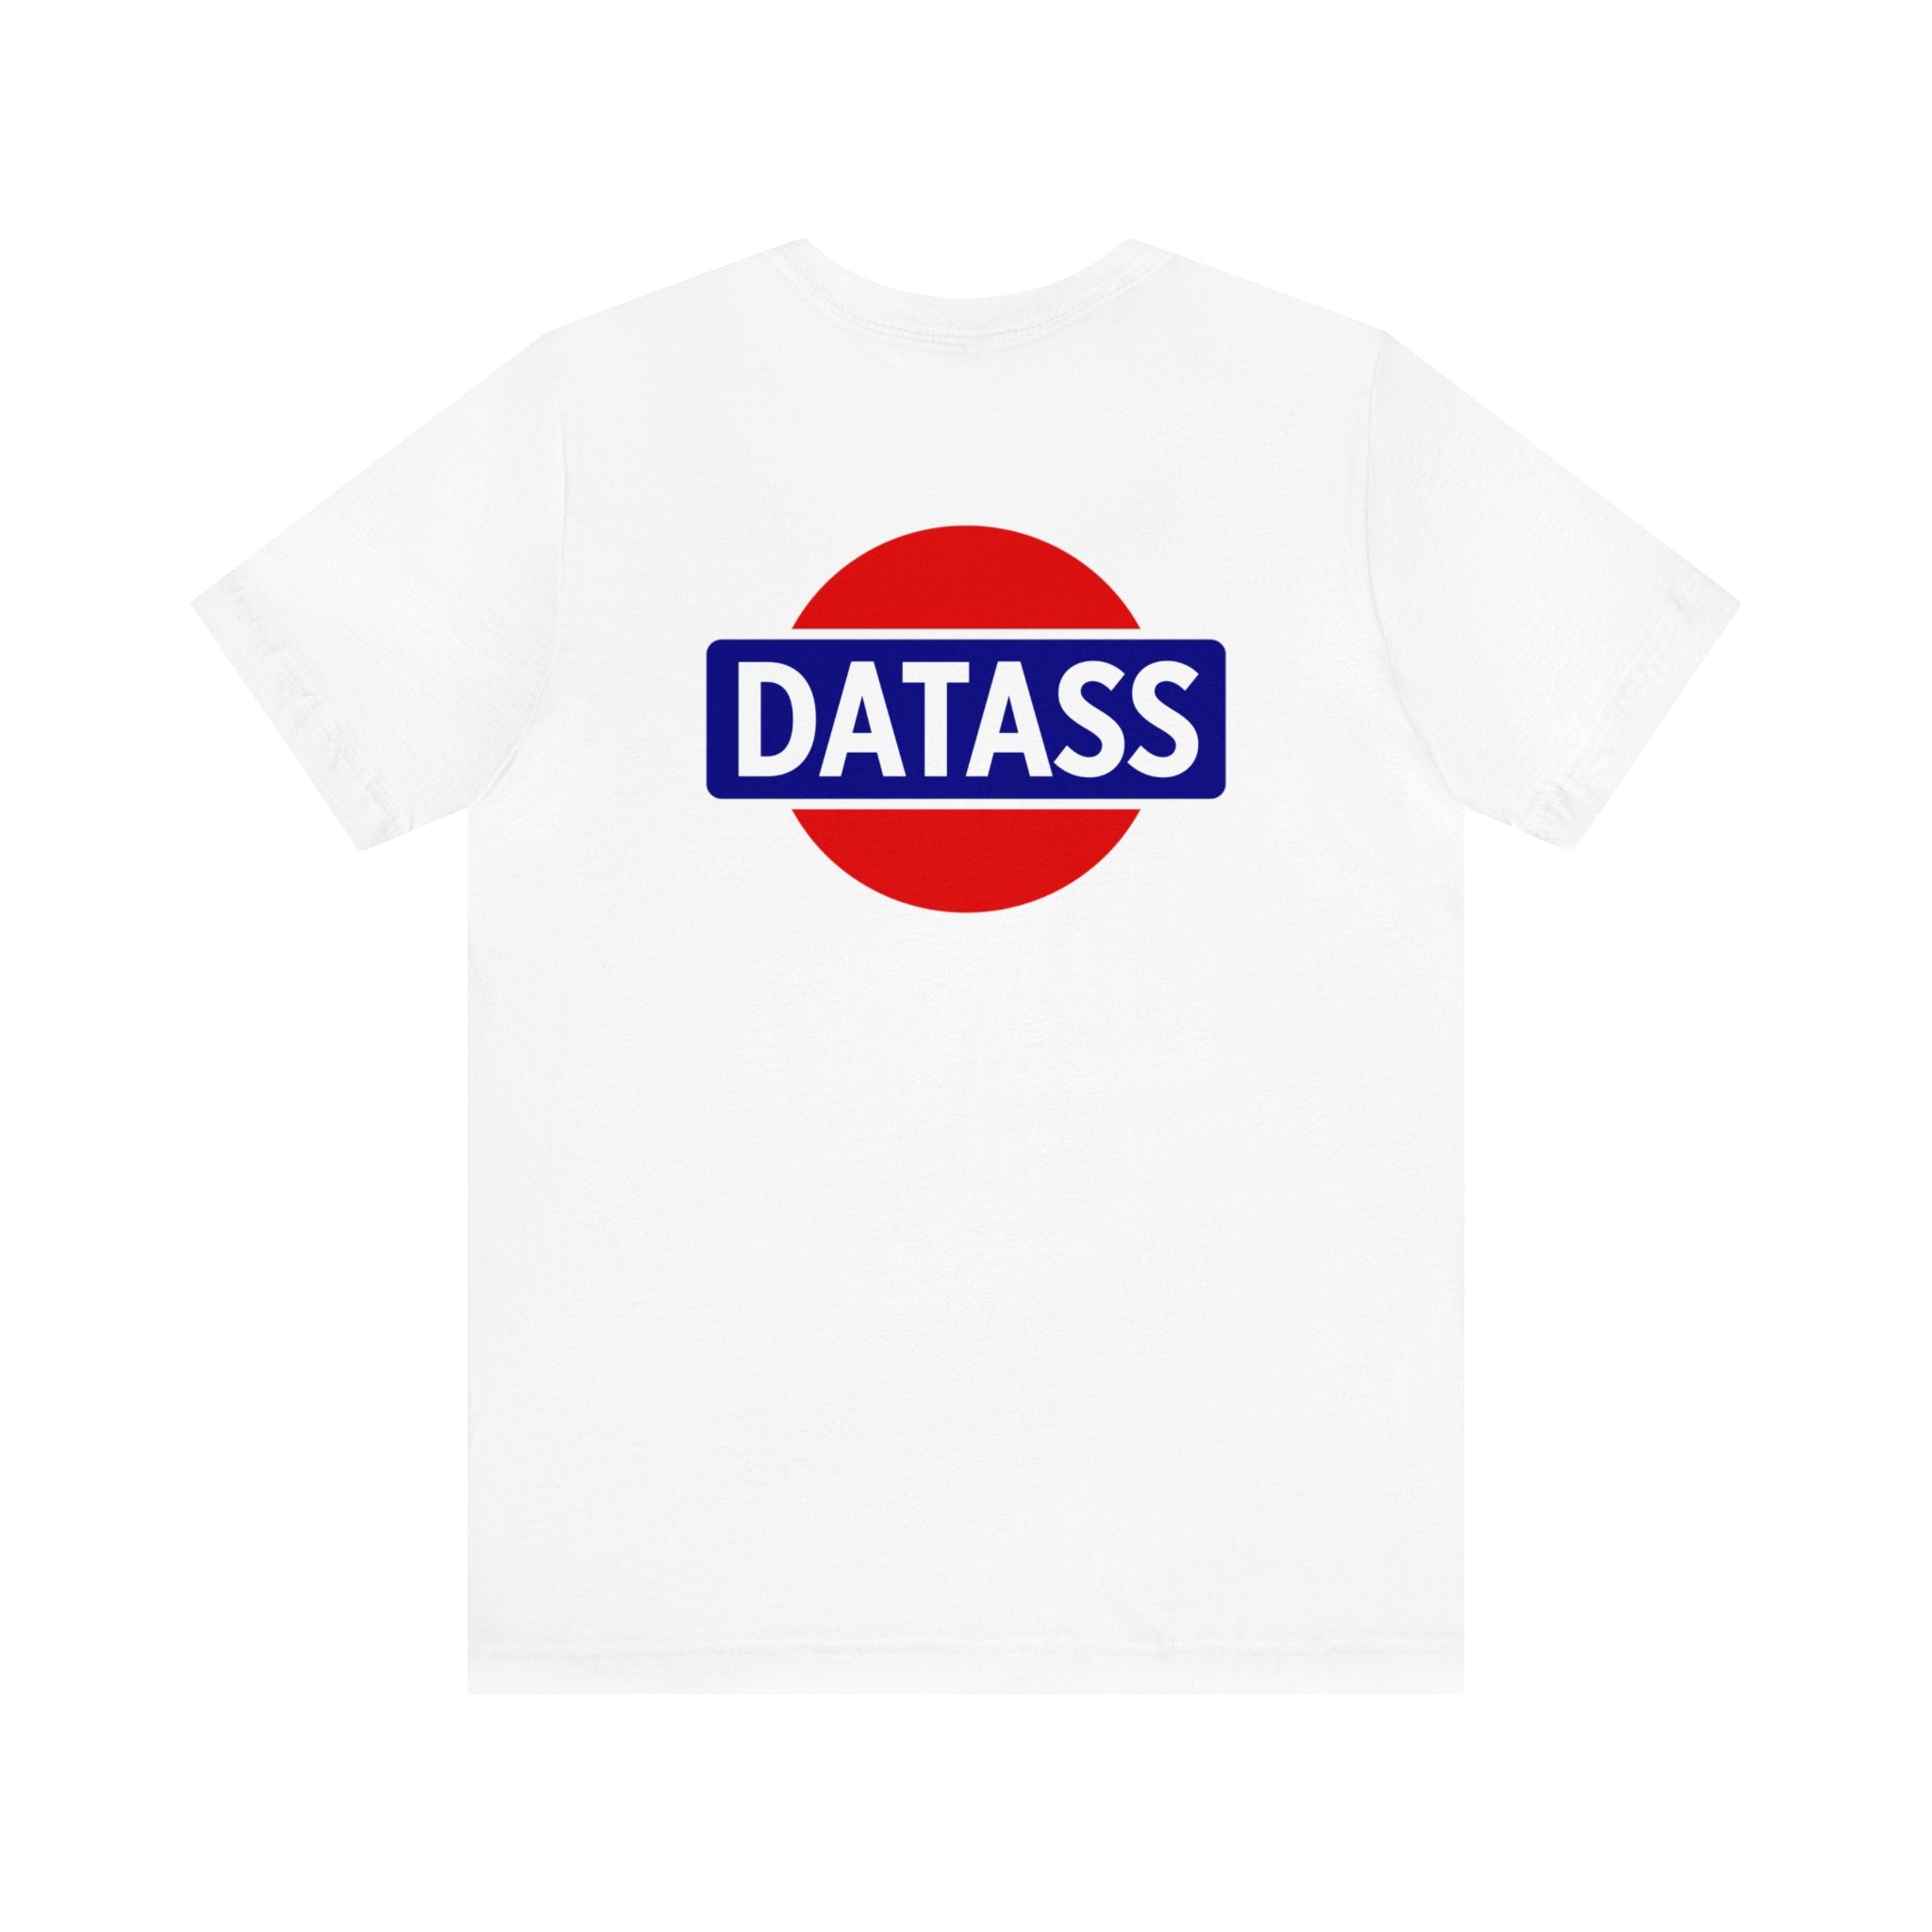 Datass T-Shirt